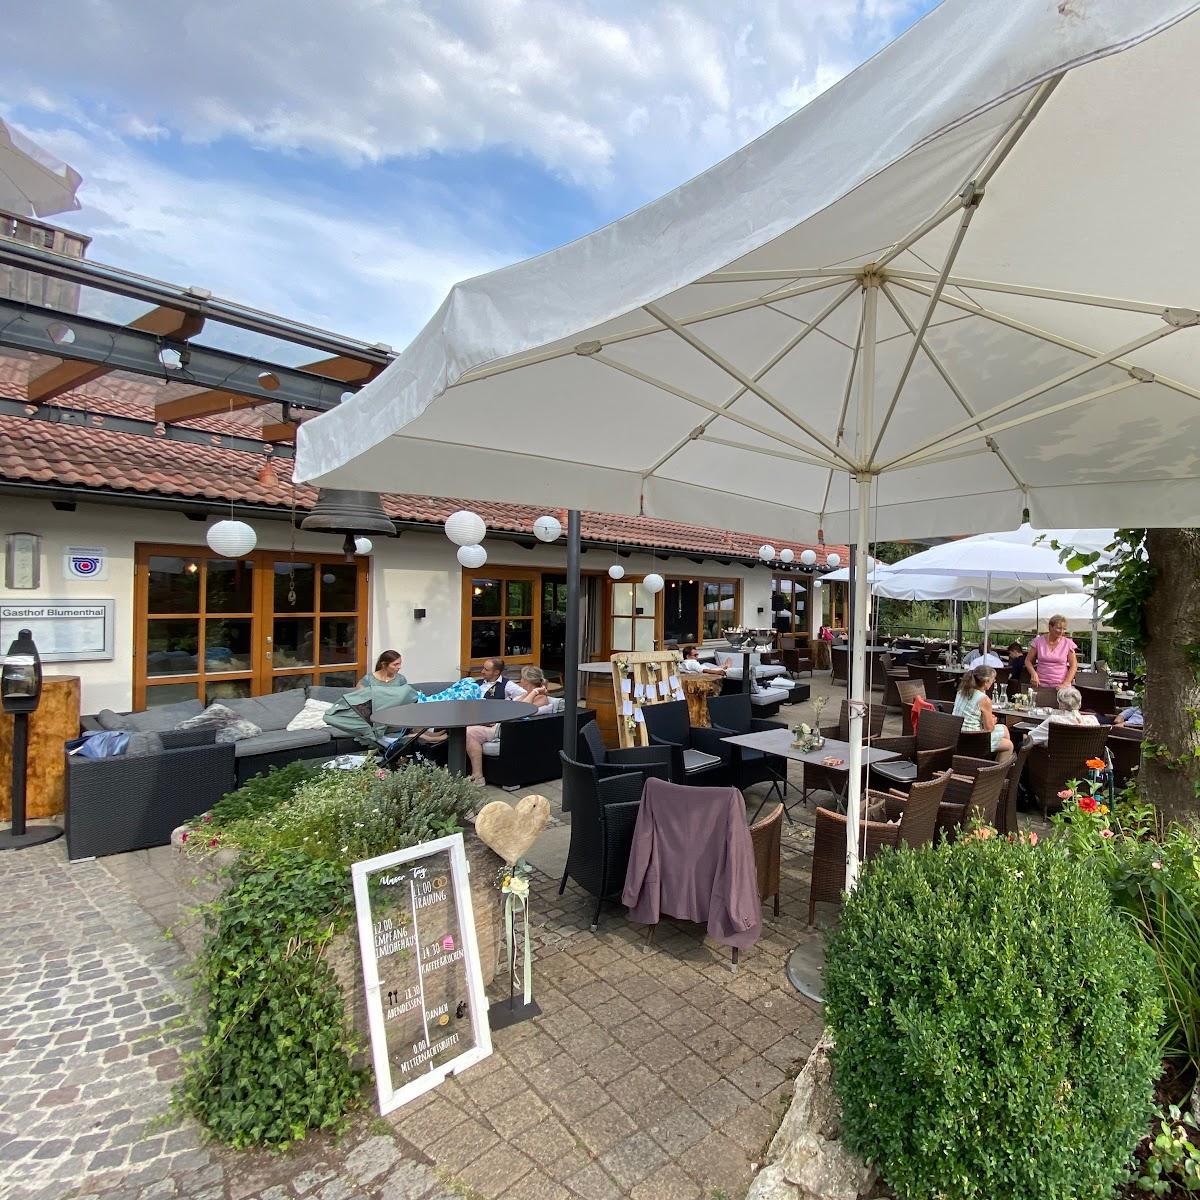 Restaurant "Gasthof Blumenthal GmbH" in Spalt